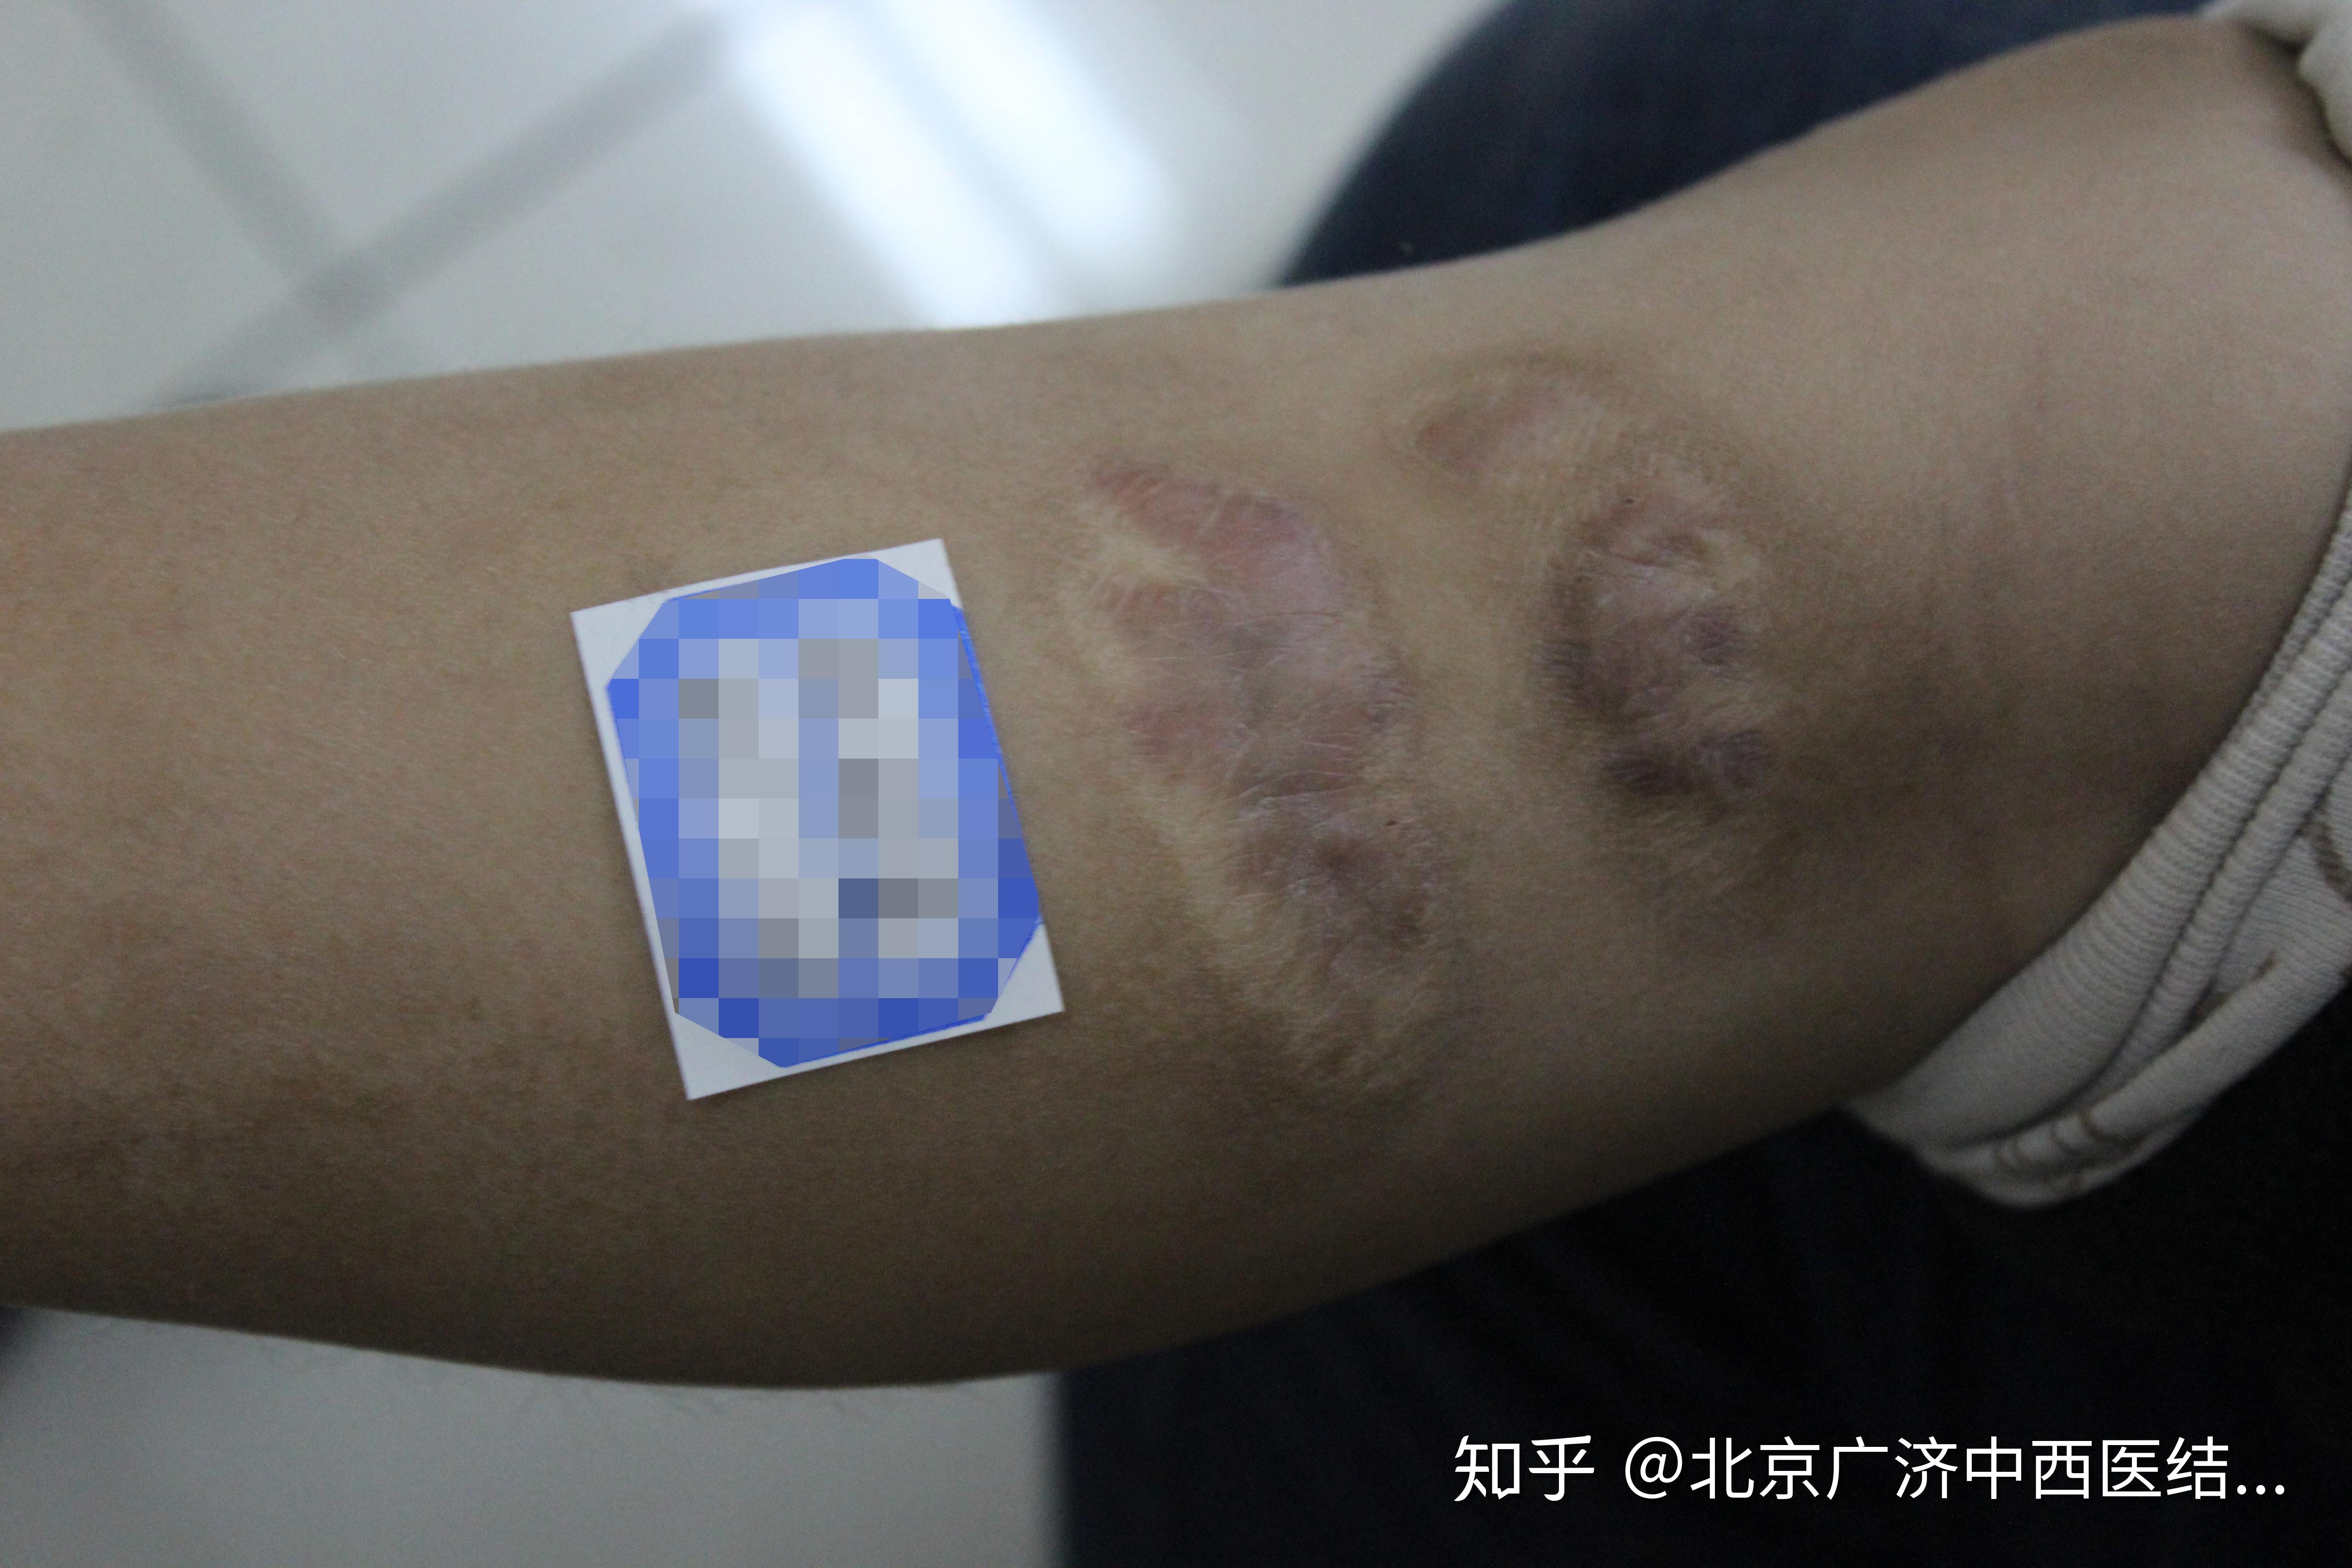 刘宝宝左手因热液烫伤导致的增生性疤痕治愈了_北京疤痕医院_瘢痕修复_疤痕治疗_北京疤康医院【官】